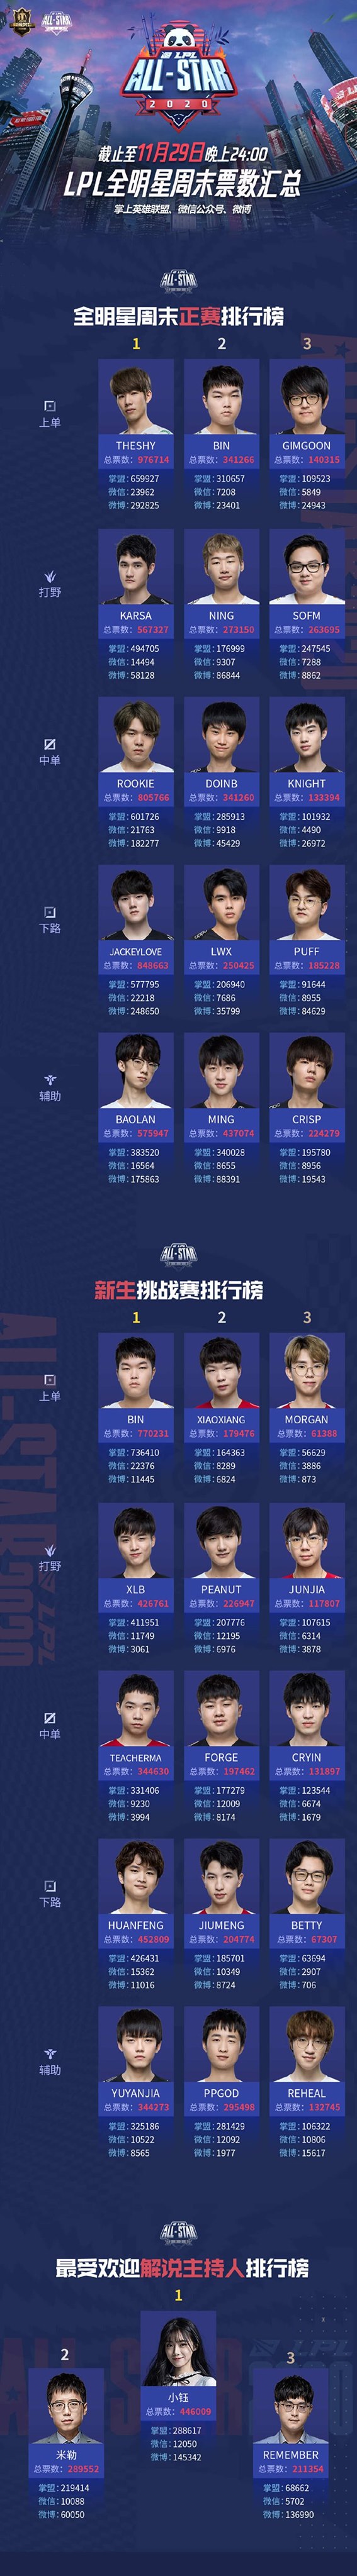 Đóng cổng bình chọn All Star LPL 2020: SofM hết cơ hội, Bin và Huanfeng là tân binh được yêu thích nhất - Ảnh 1.